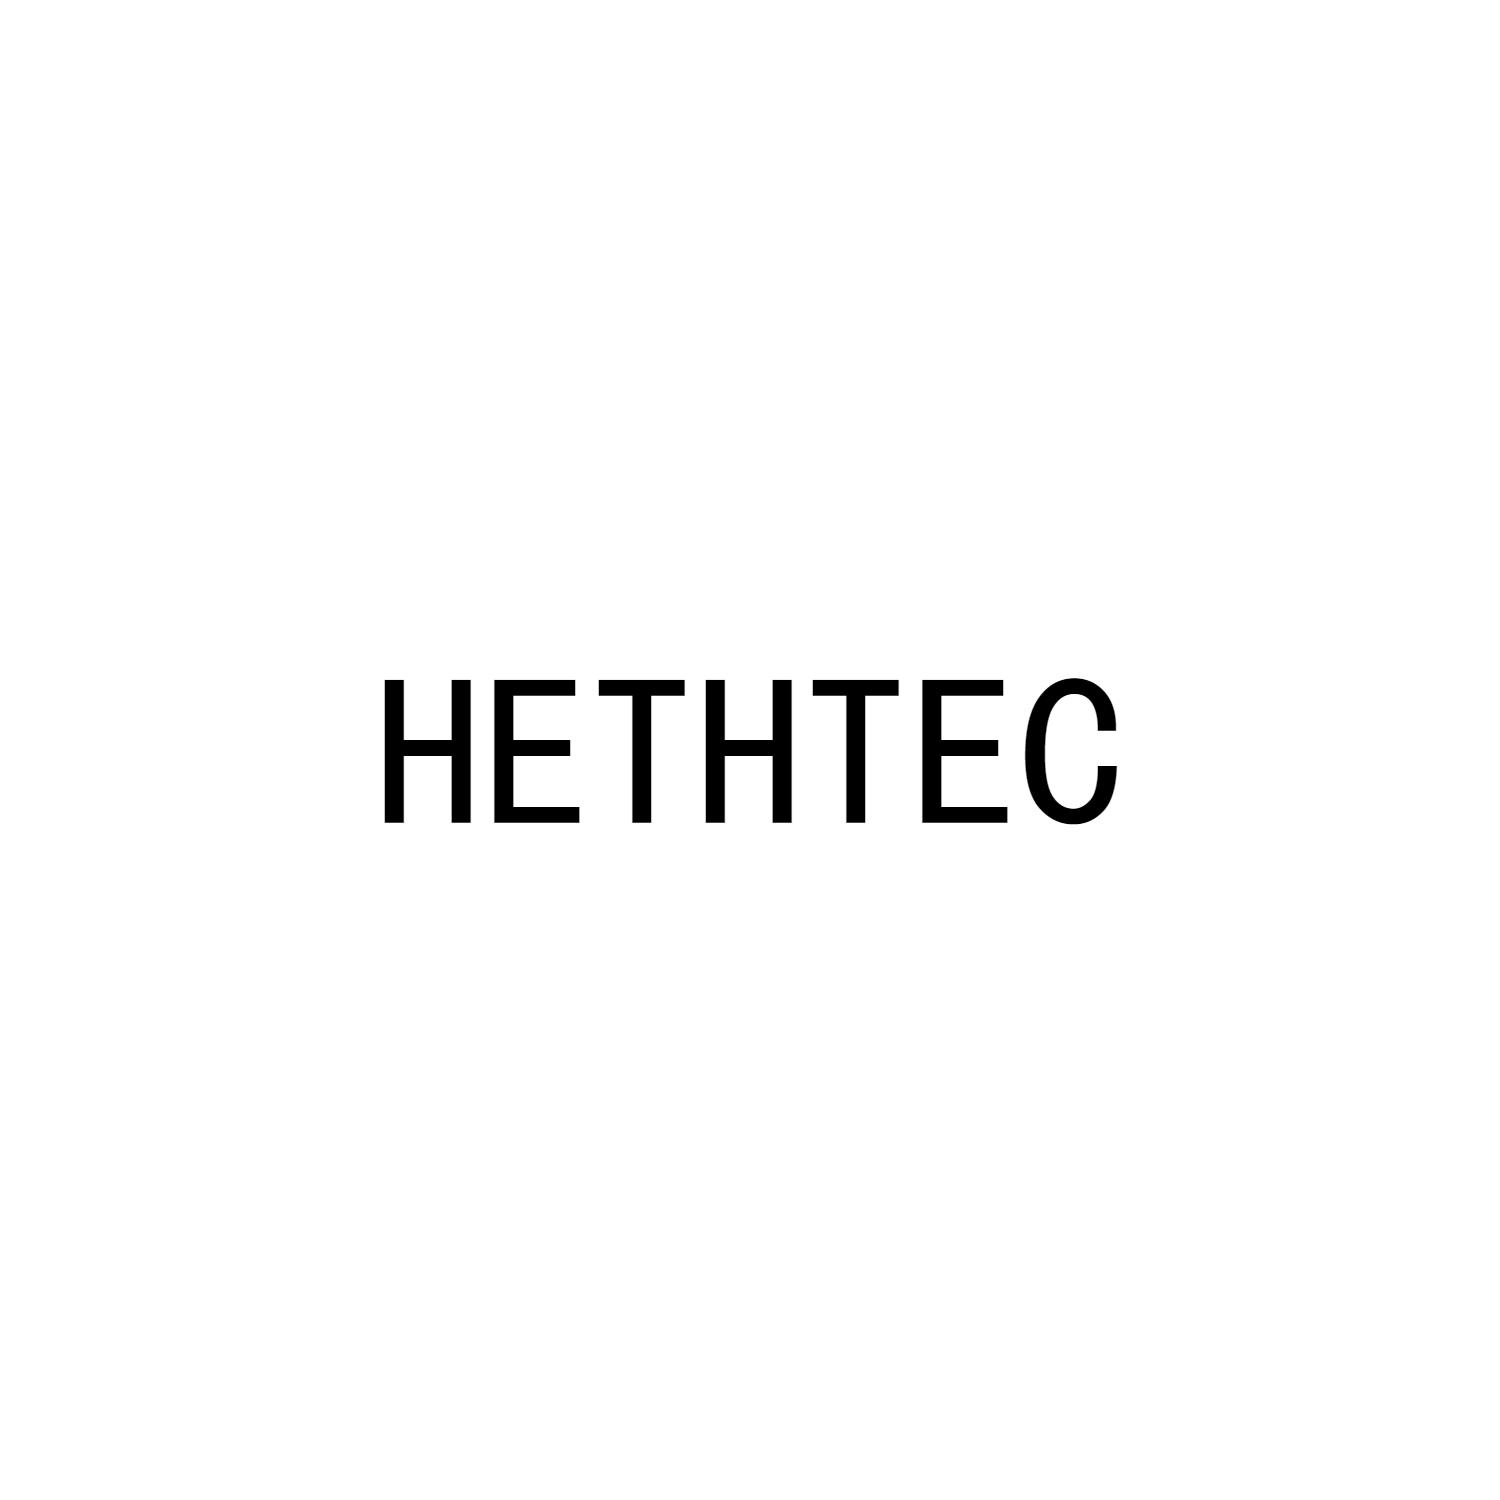 HETHTEC